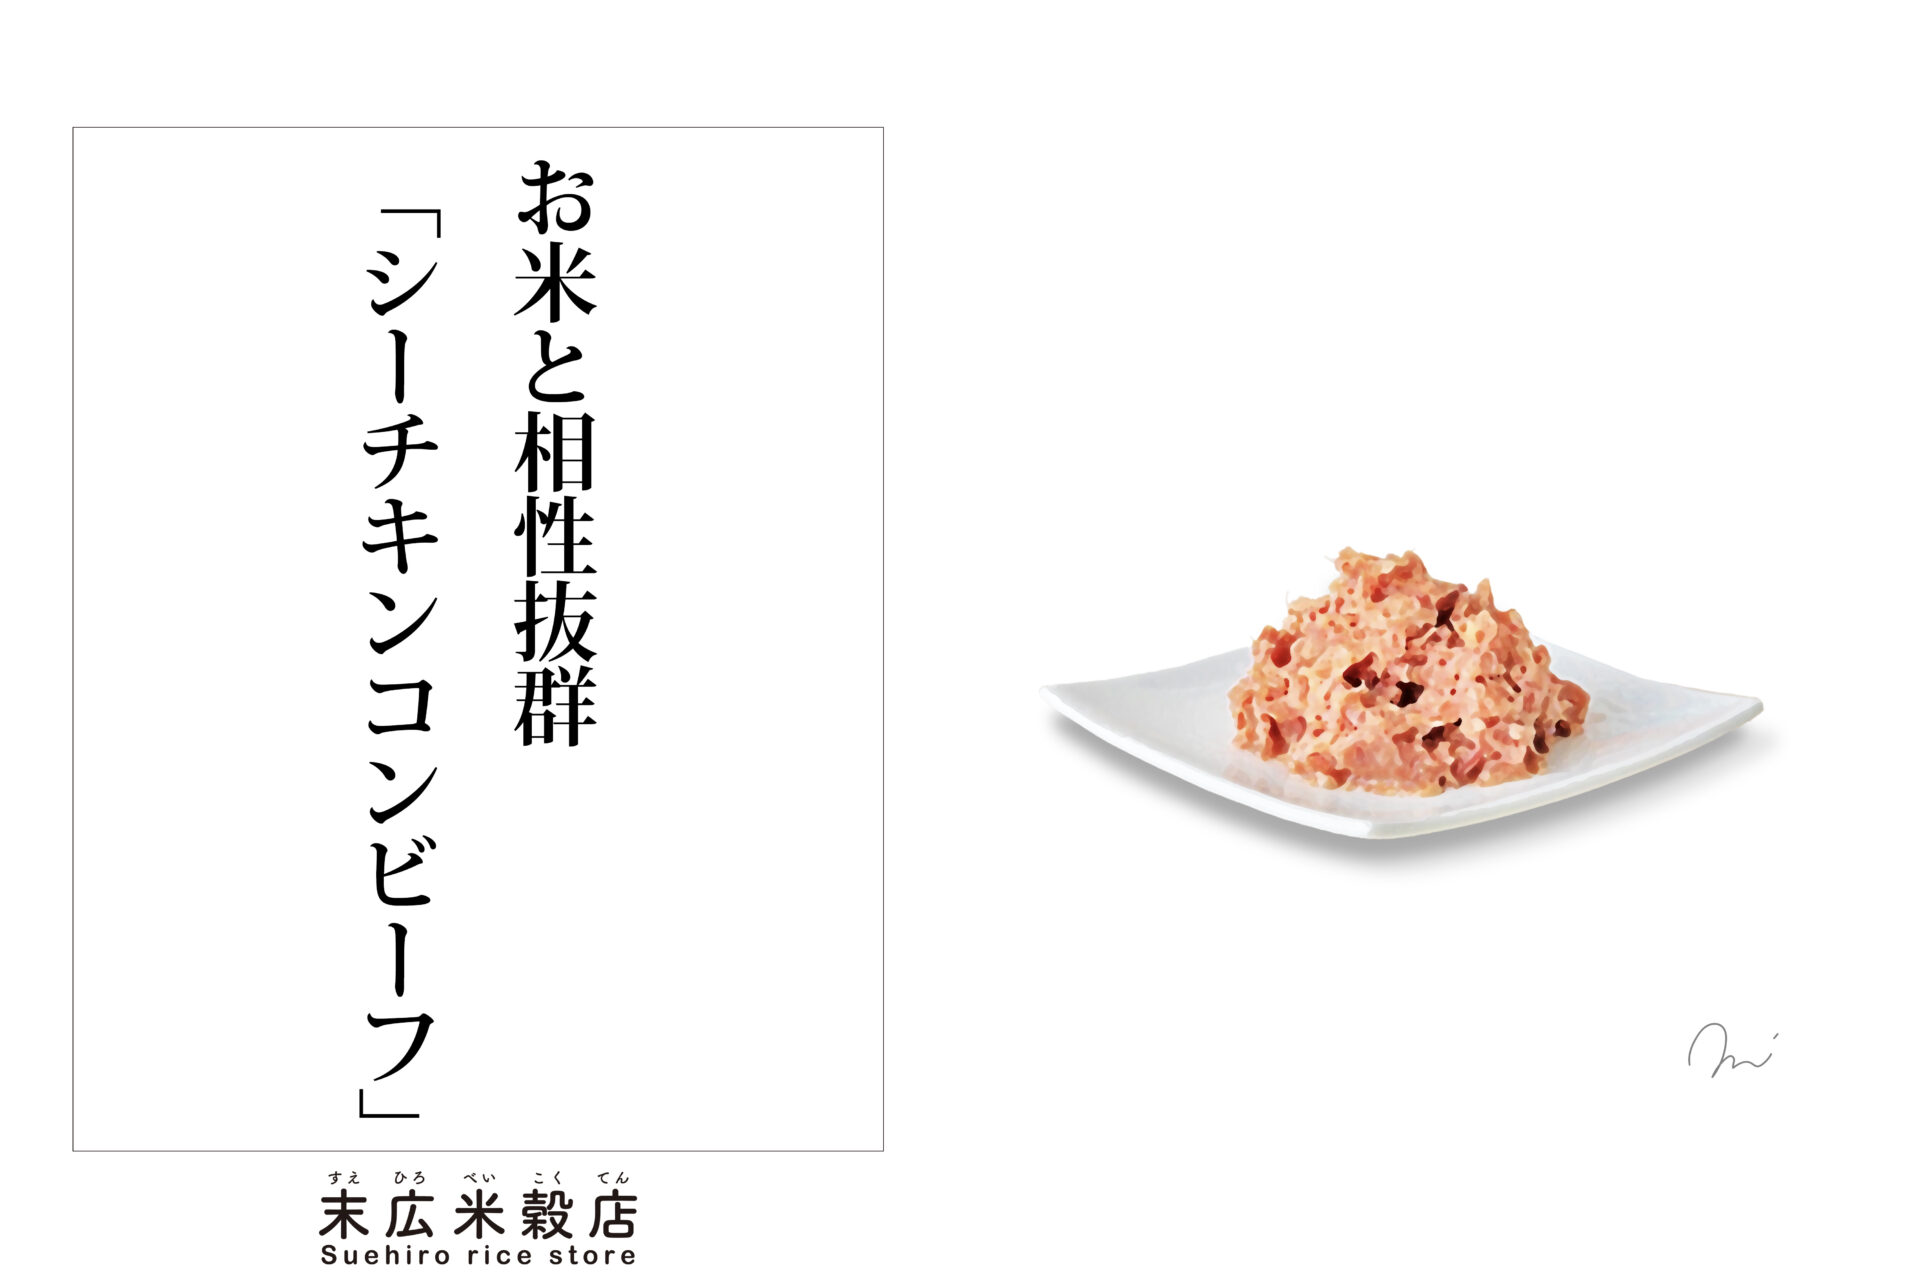 魚プラス牛肉「シーチキンコンビーフ缶詰」